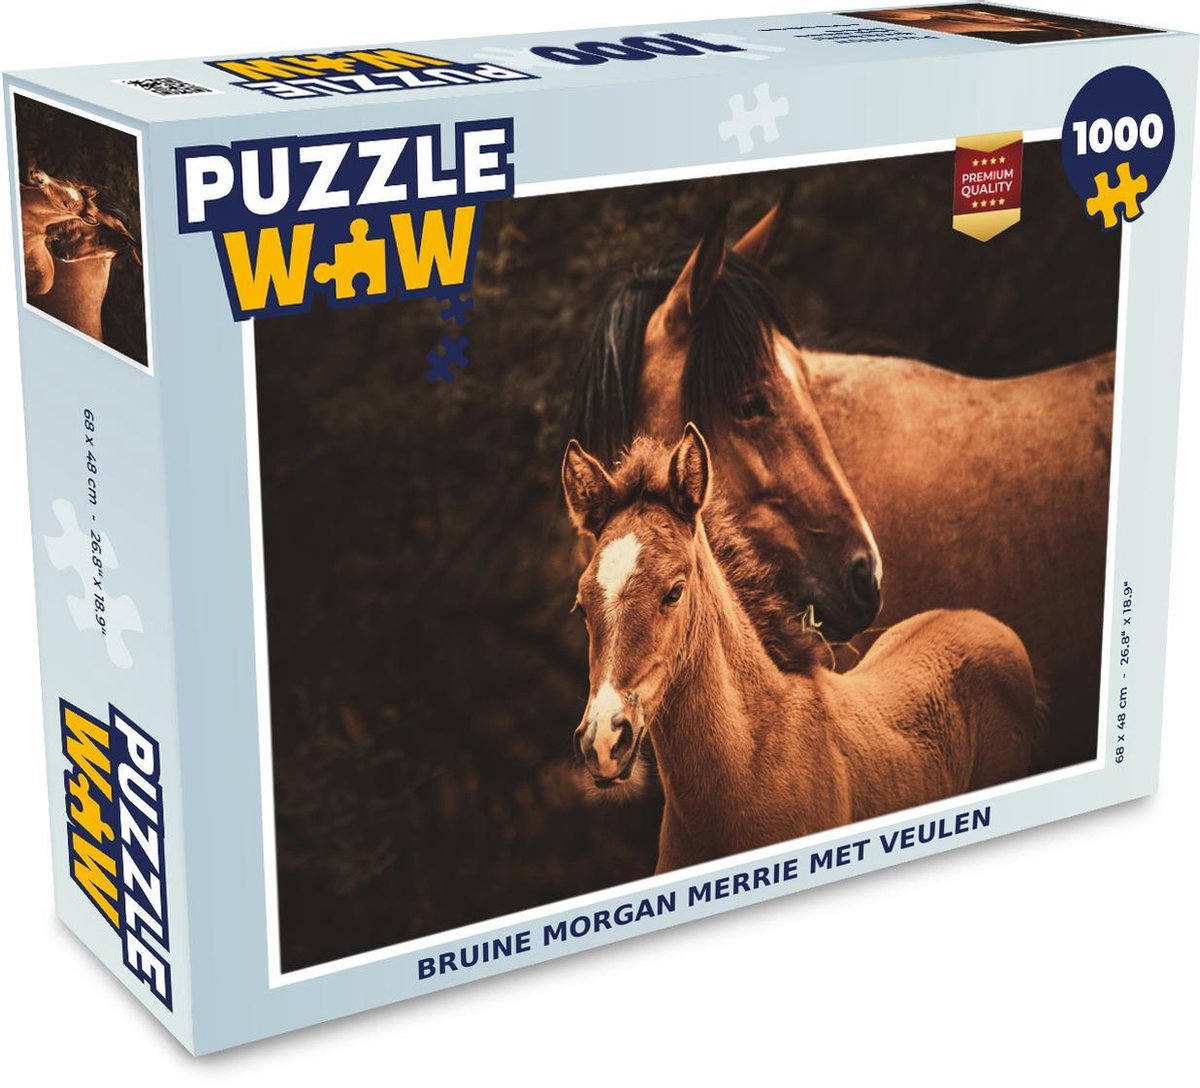 Afbeelding van product Puzzel 1000 stukjes volwassenen Morgan paard 1000 stukjes - Bruine Morgan merrie met veulen - PuzzleWow heeft +100000 puzzels